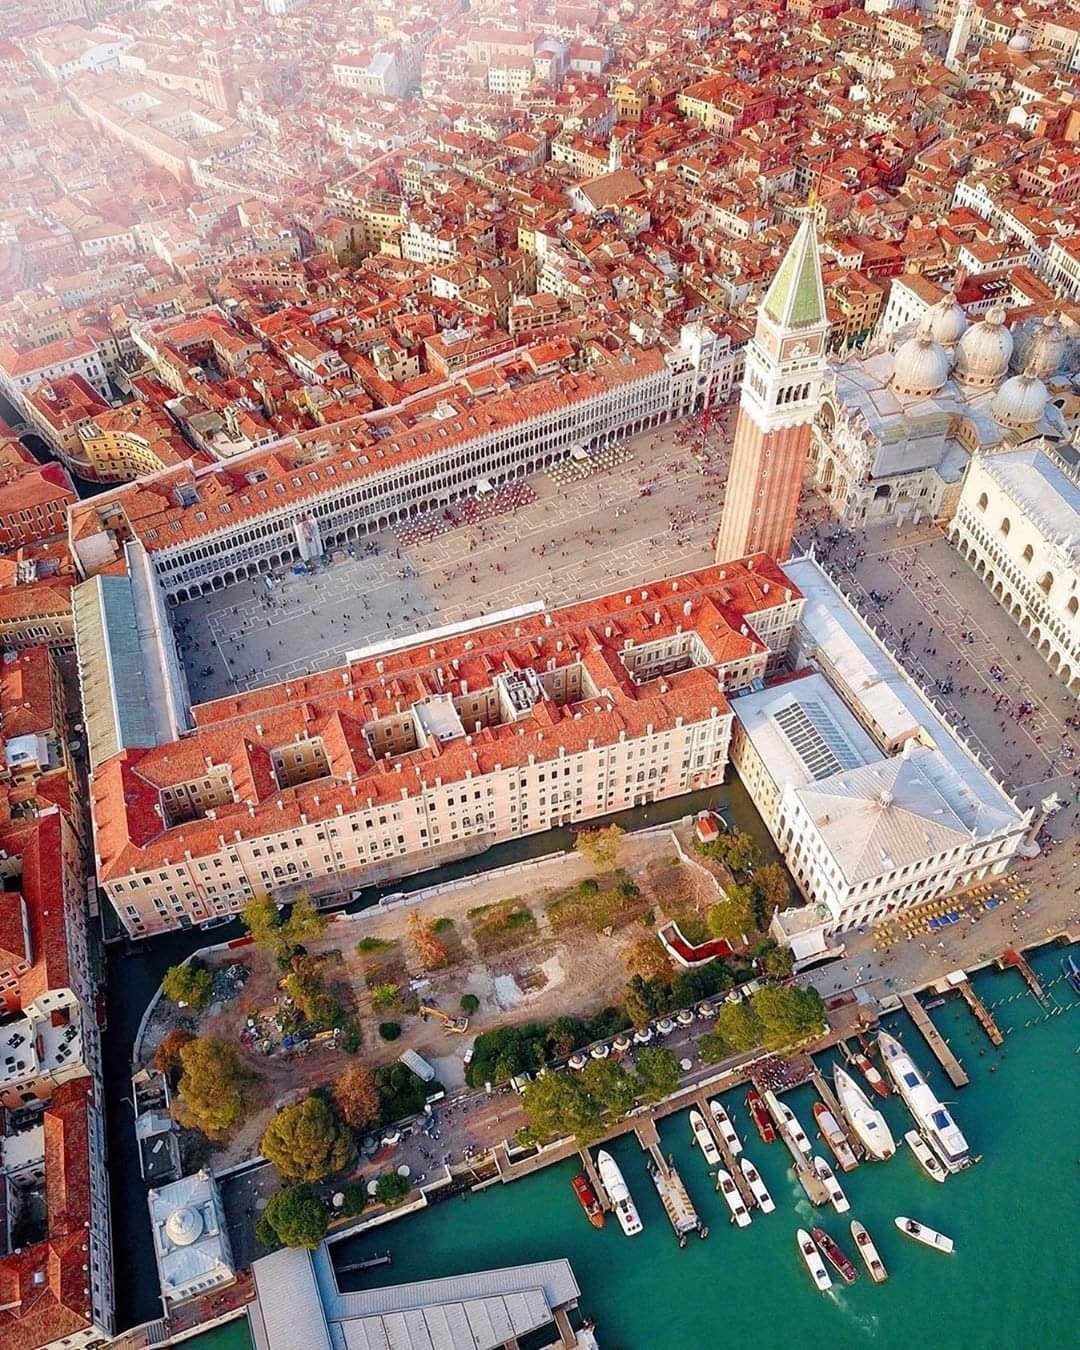 וונציה – מוזיאונים, ברים וסיפורה של אורסולה